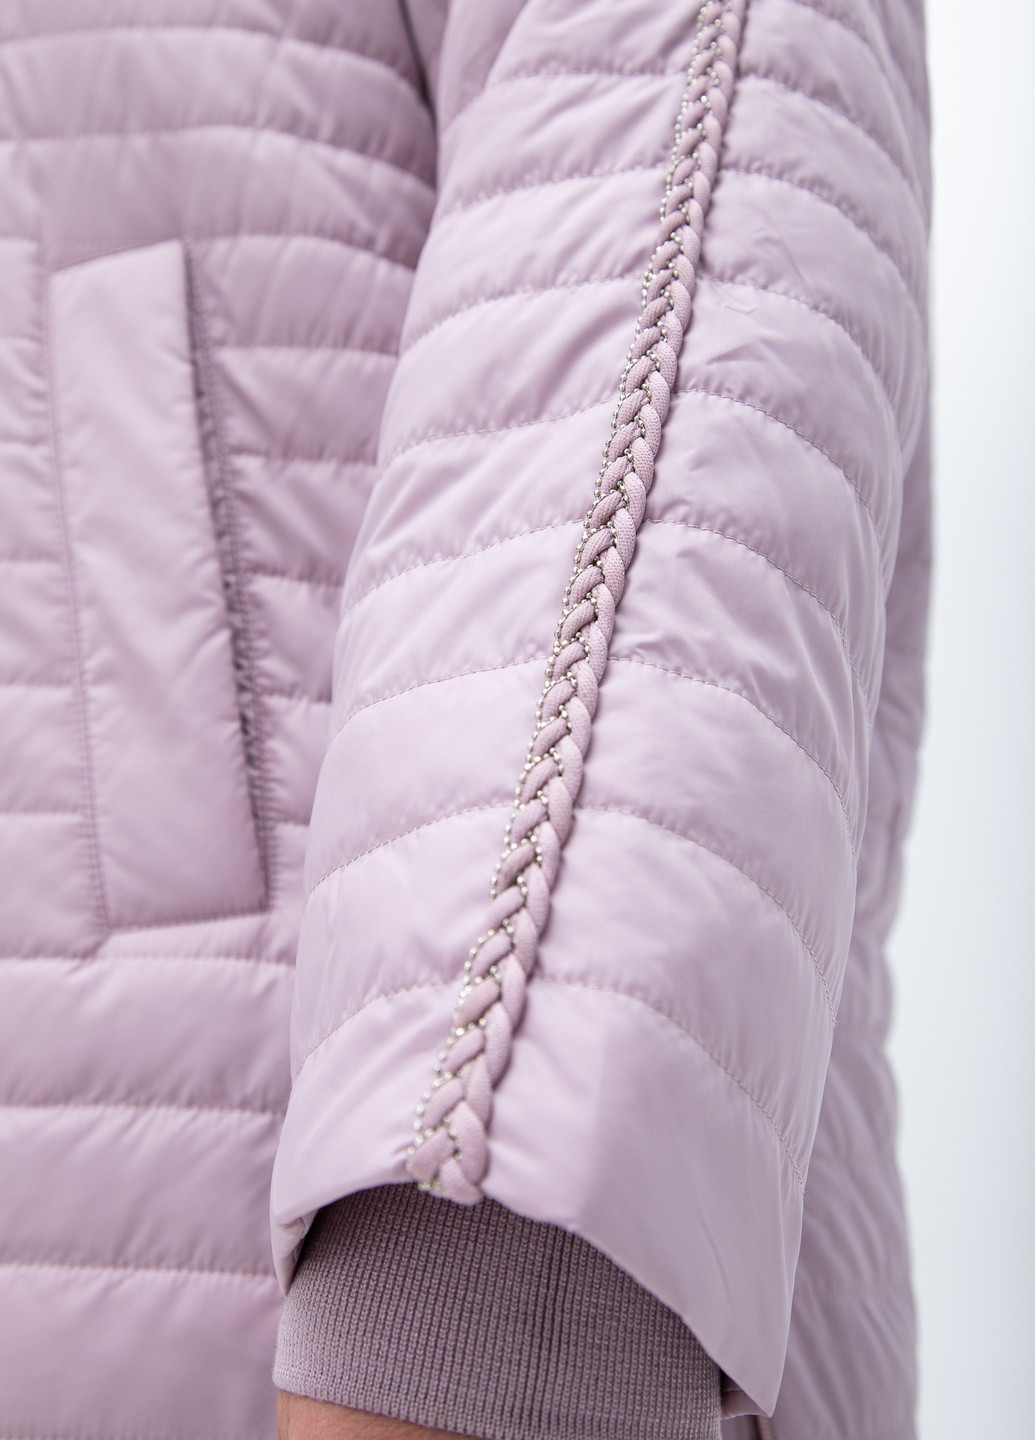 Пудрова демісезонна жіноча демісезонна куртка великі розміри delfi бежева 2730622 Delfy